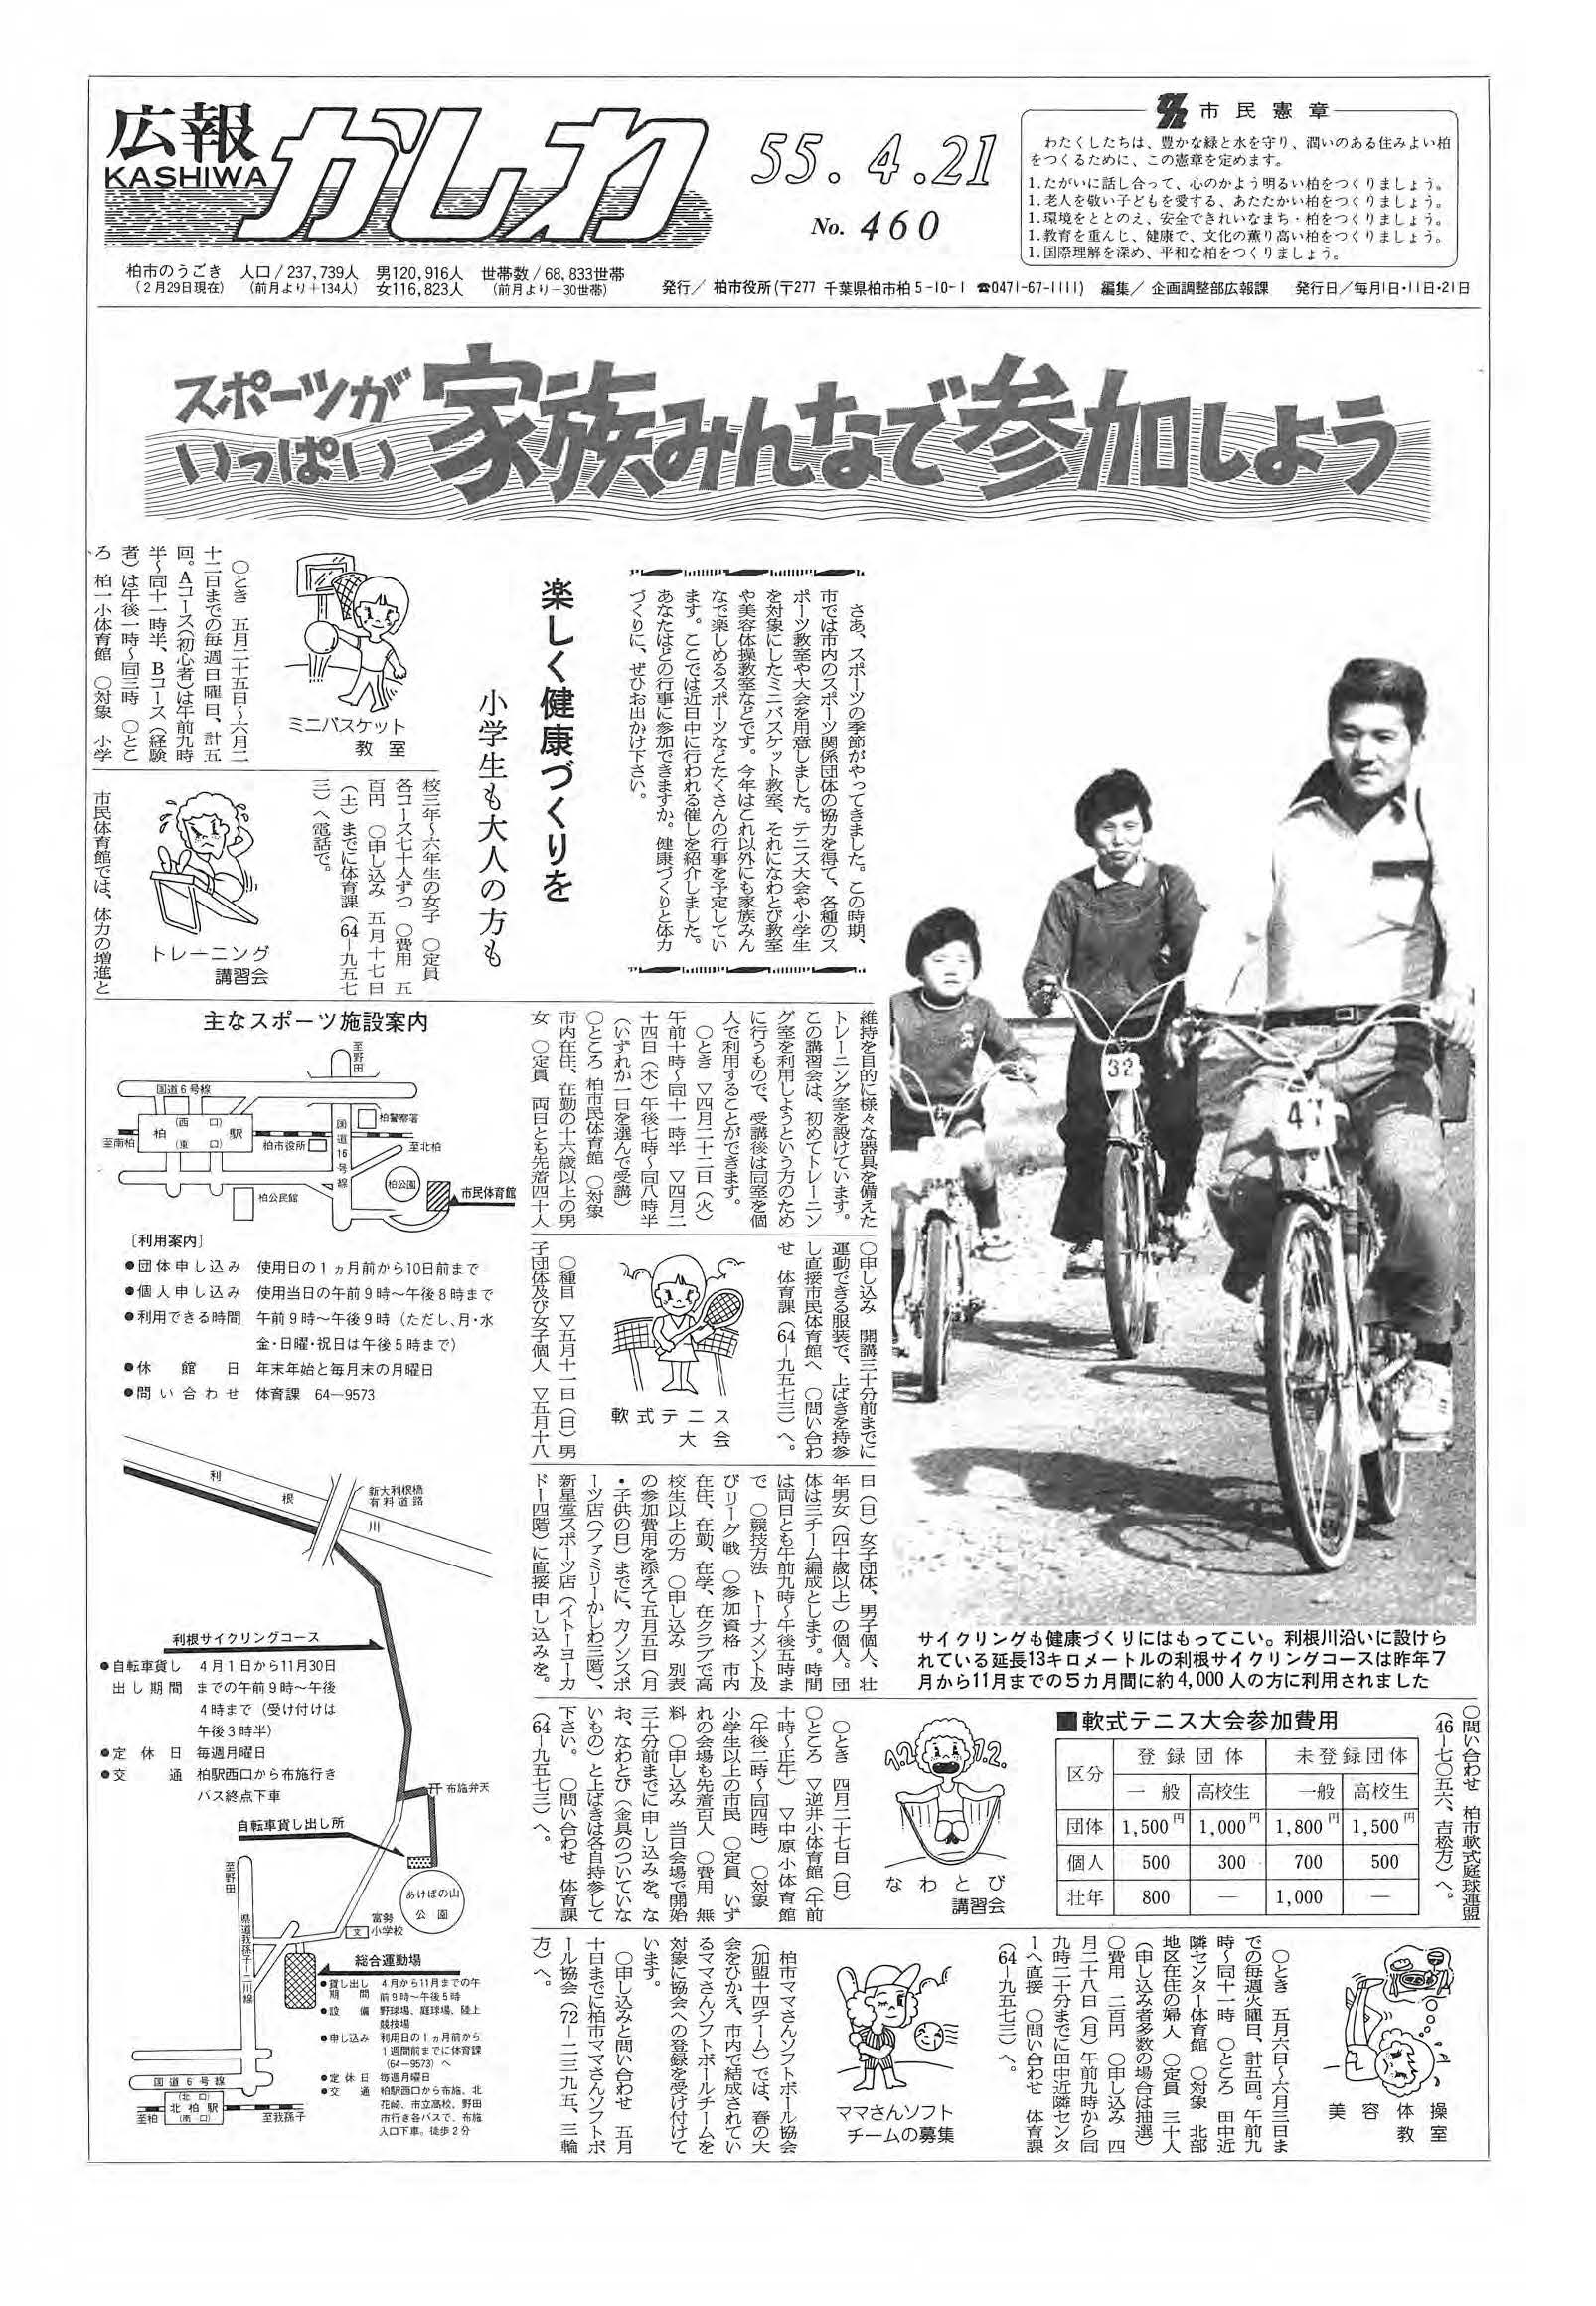 広報かしわ　昭和55年4月21日発行　460号